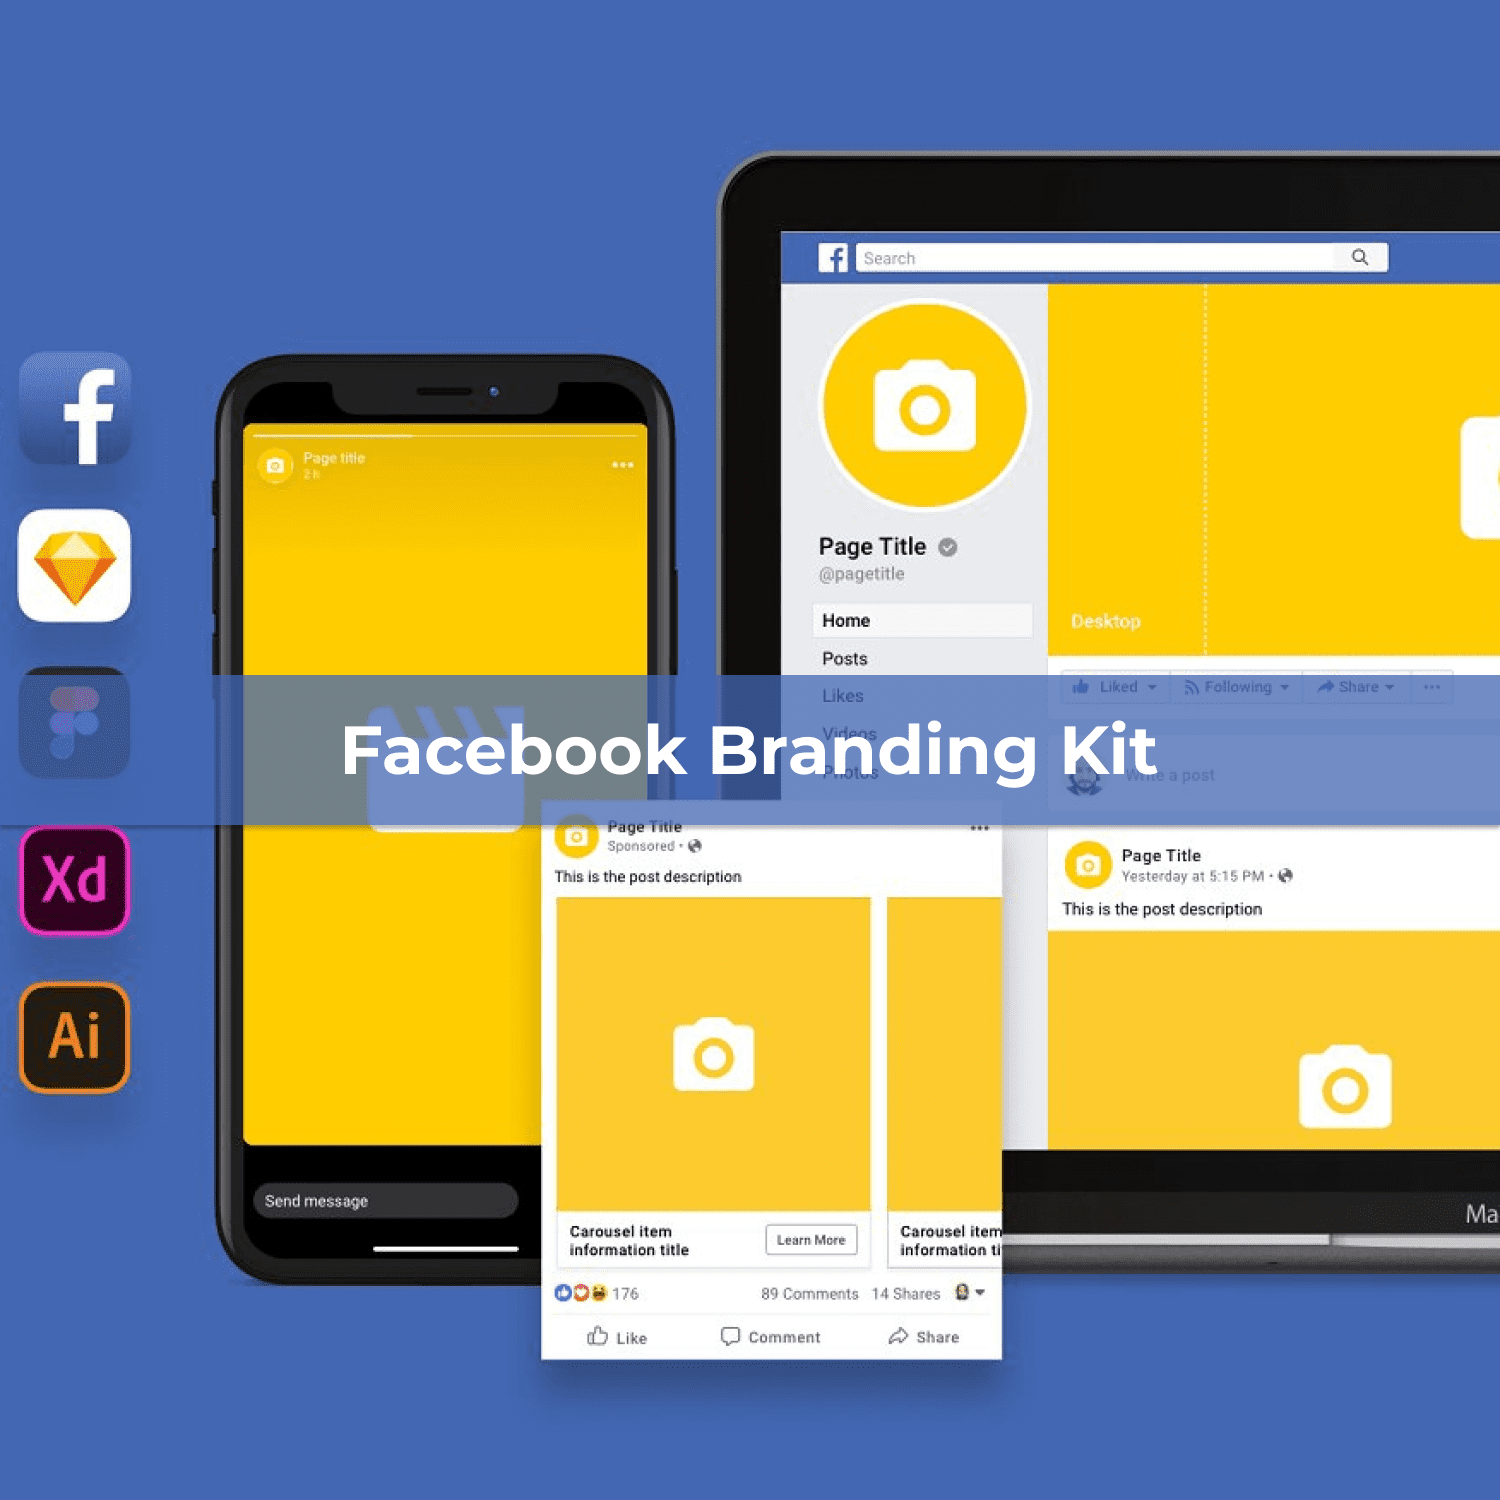 Facebook Branding Kit cover image.